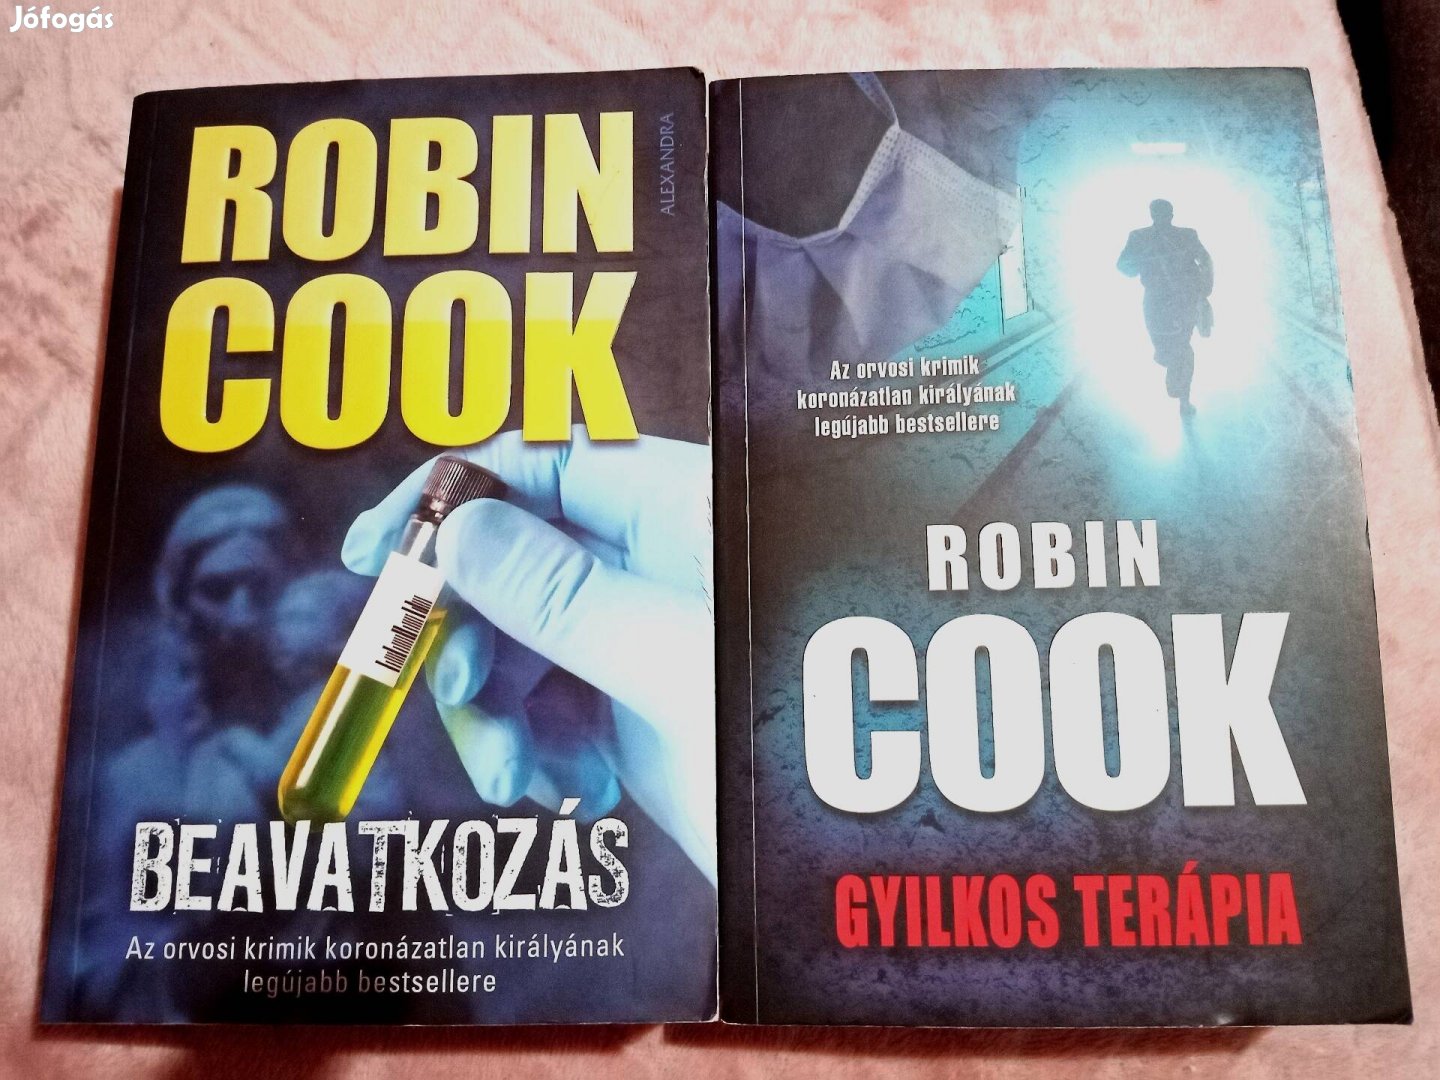 Robin Cook könyvcsomag 